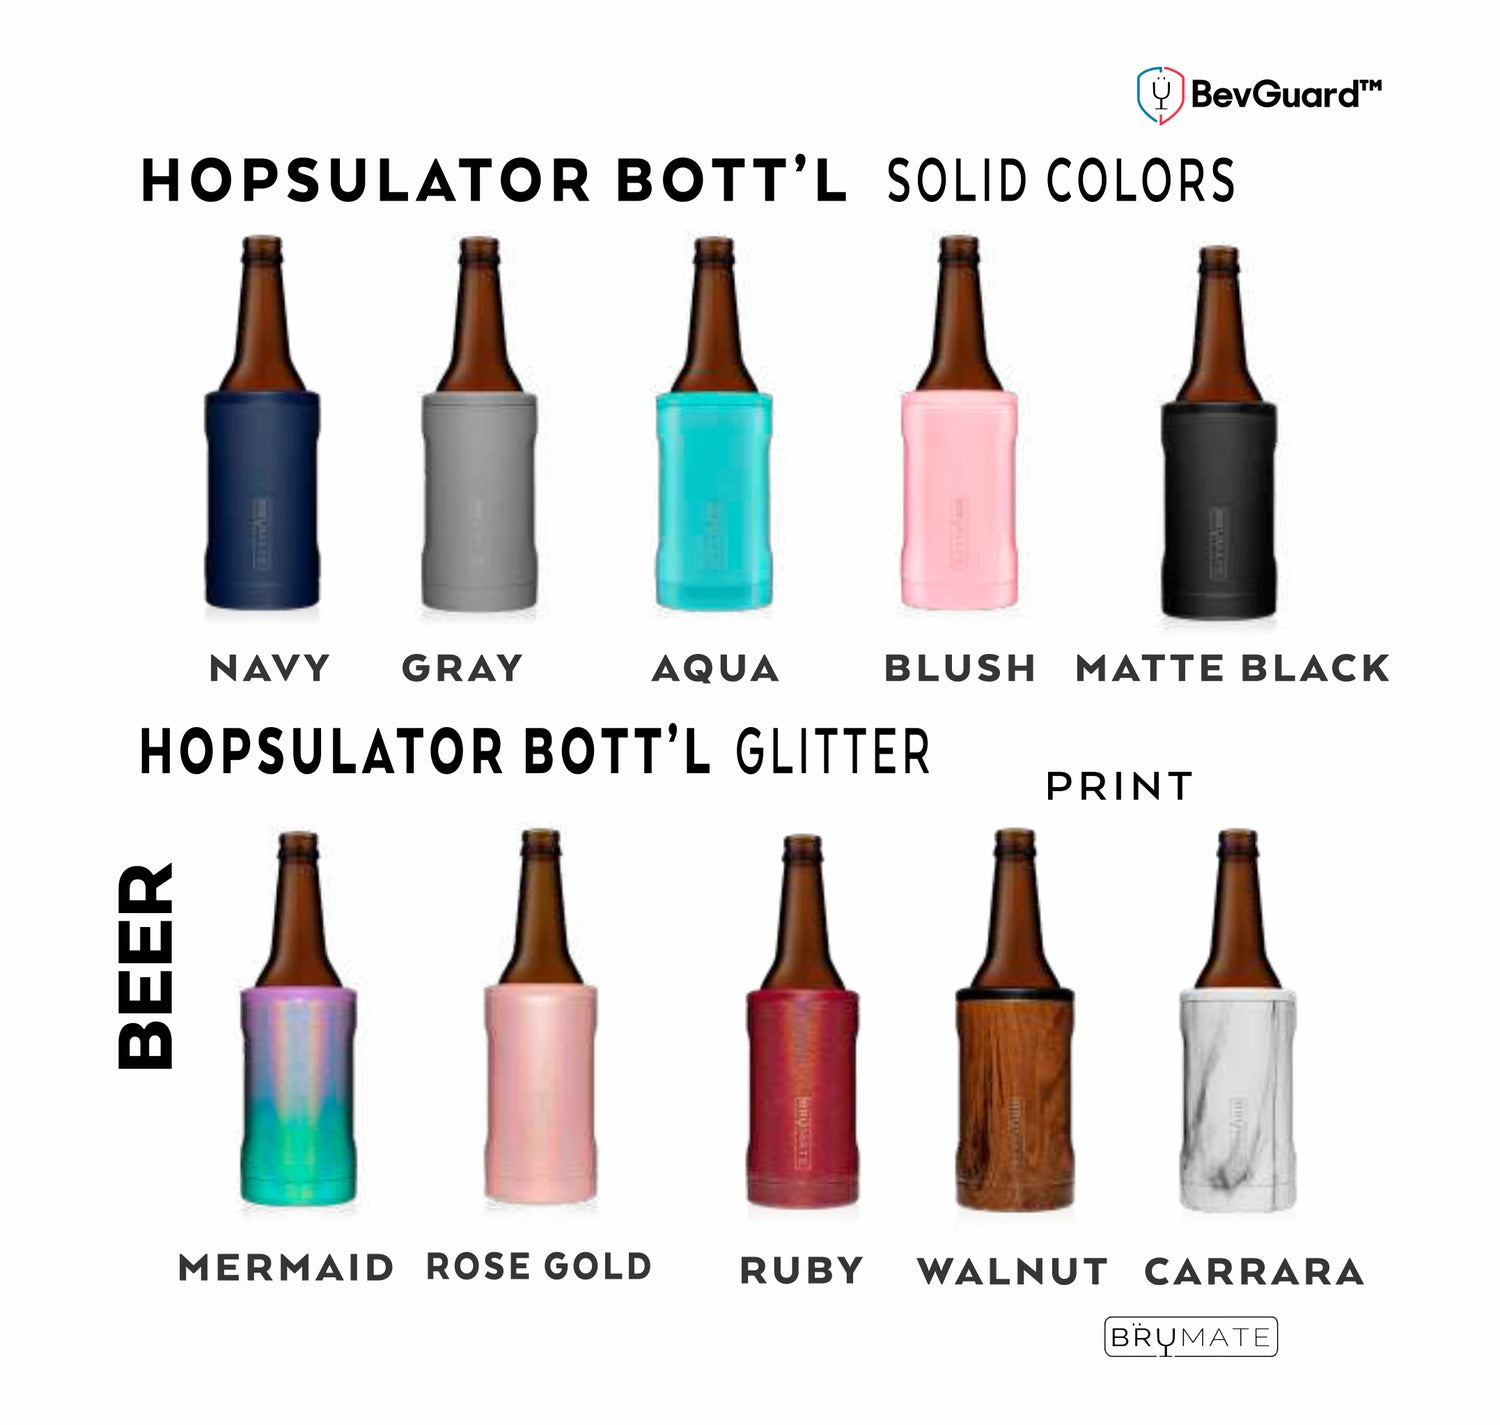 Brumate Hopsulator Bottle Cooler (12 oz. Bottles) – Wild About Me